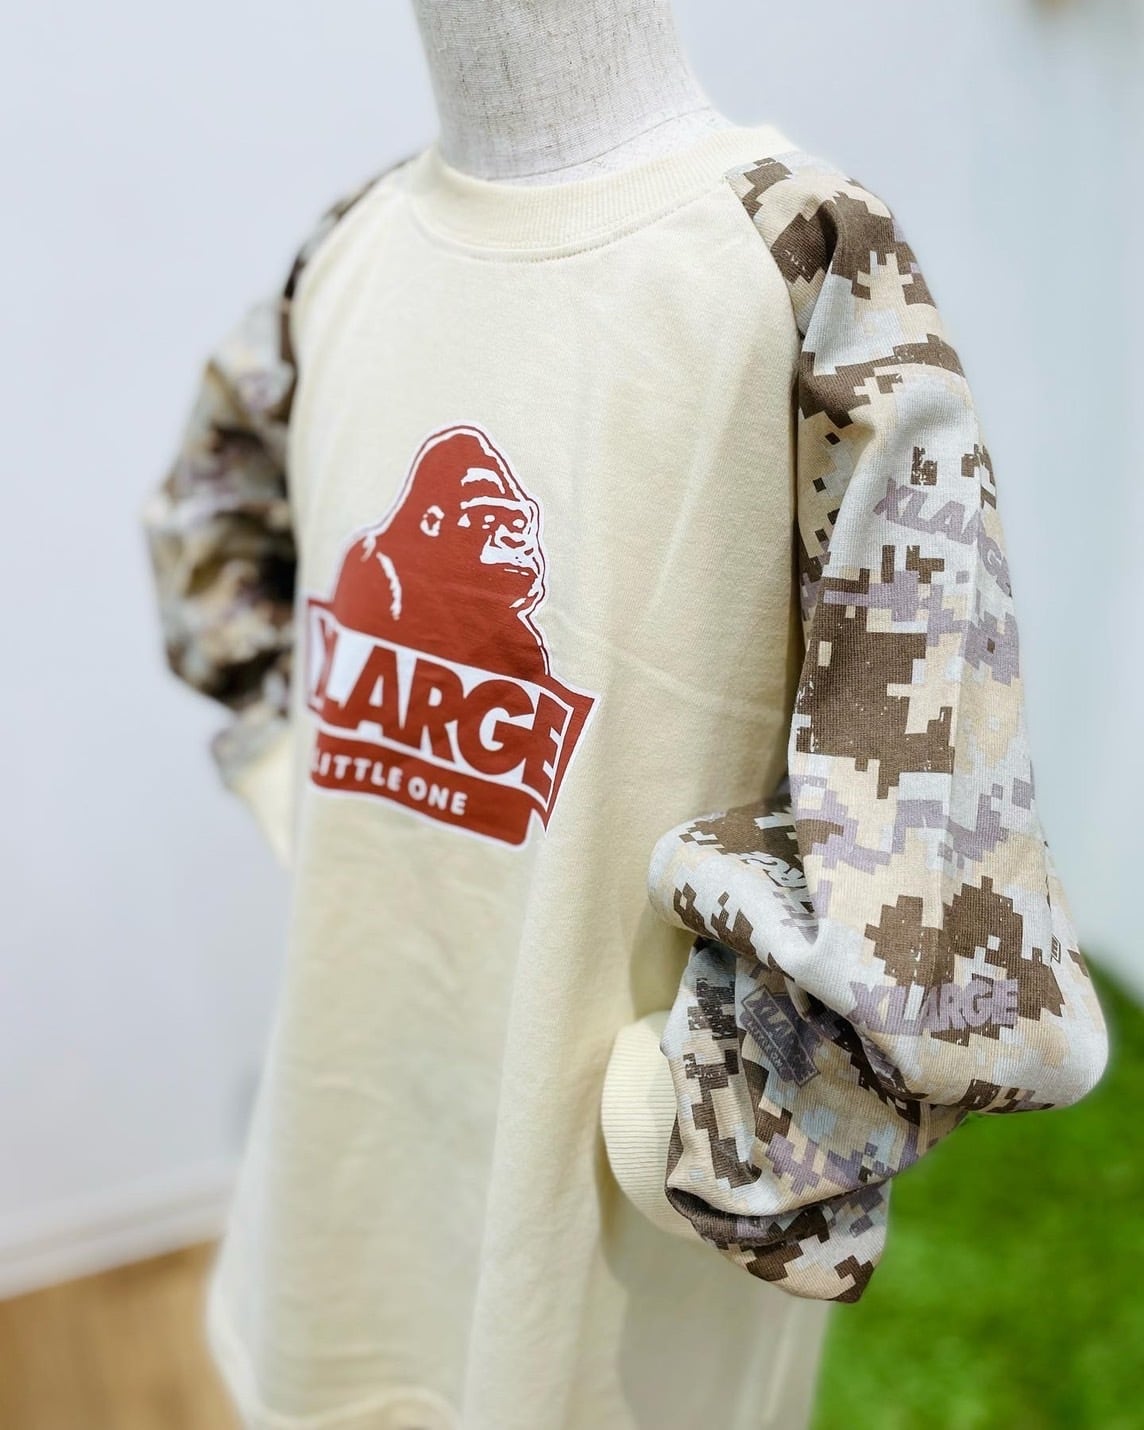 XLARGE(R) エクストララージ [限定] Tシャツ MICKEY ロンT